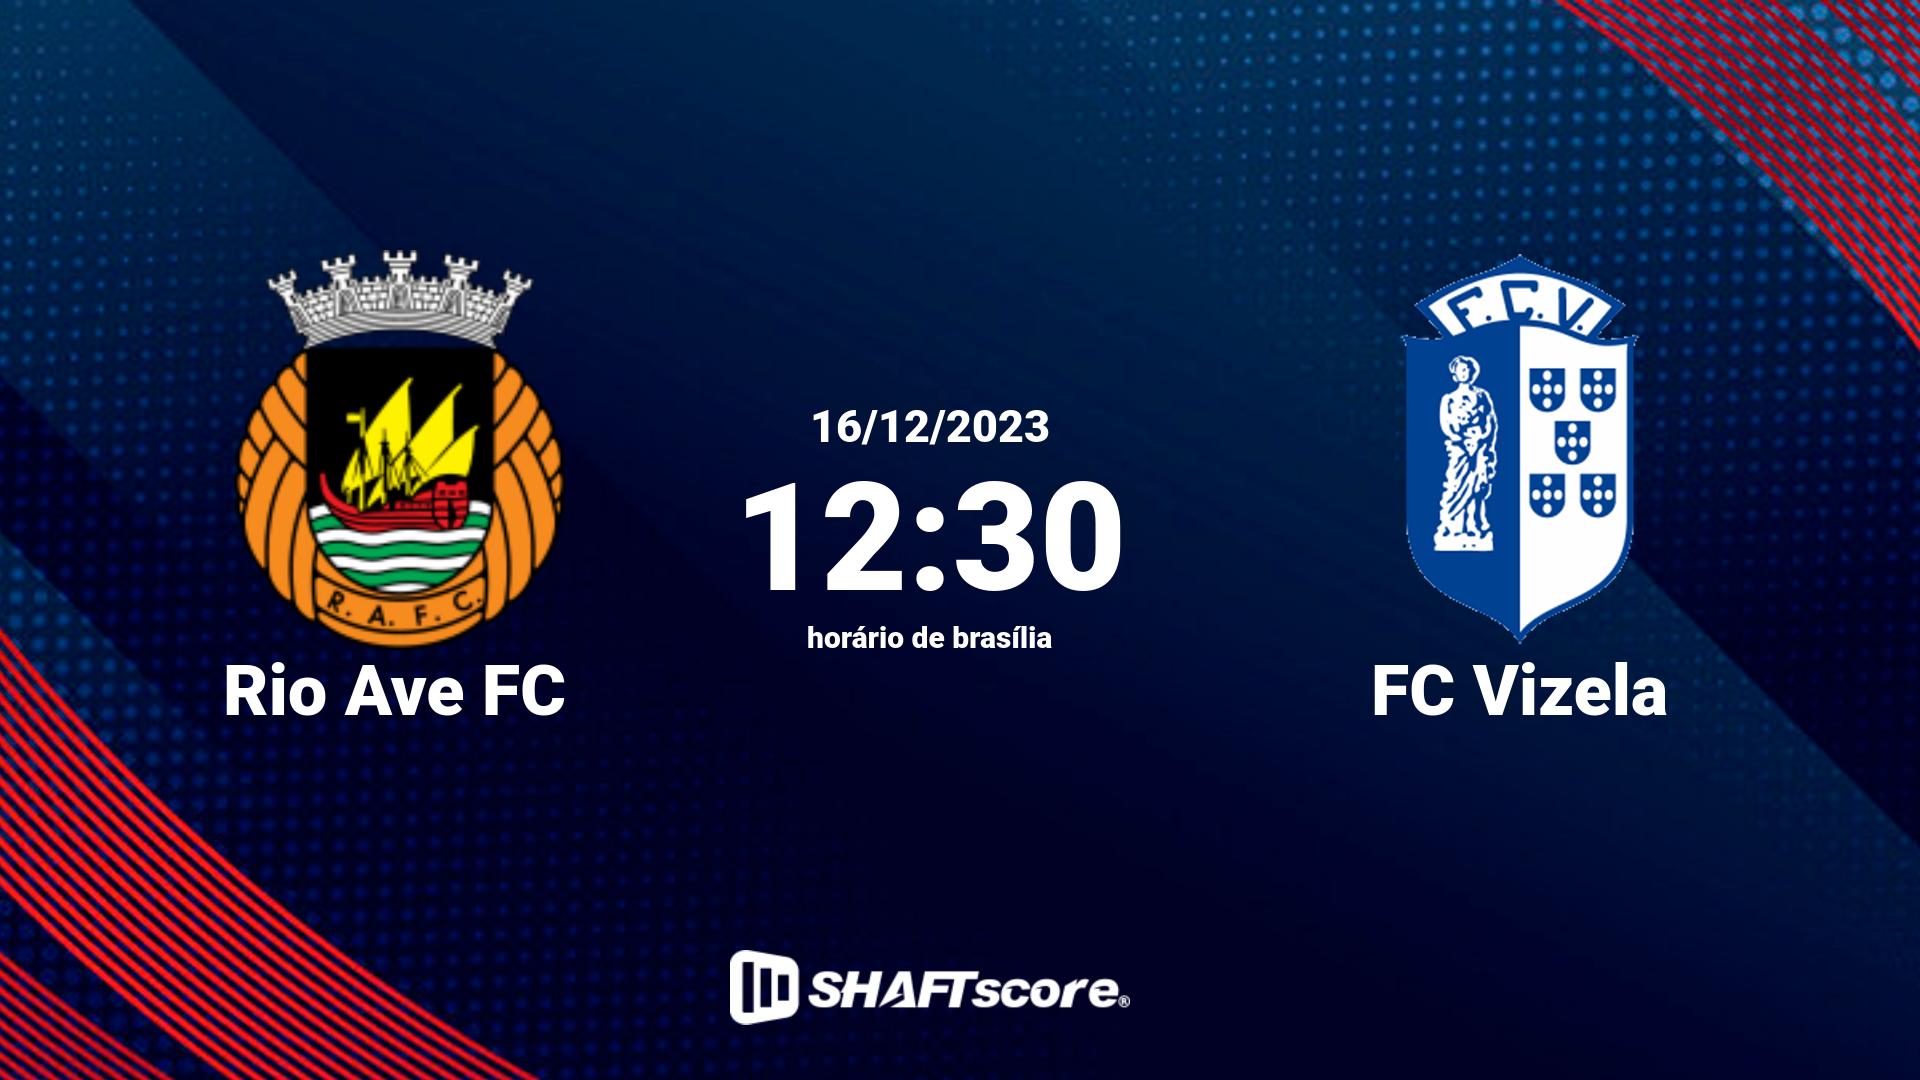 Estatísticas do jogo Rio Ave FC vs FC Vizela 16.12 12:30